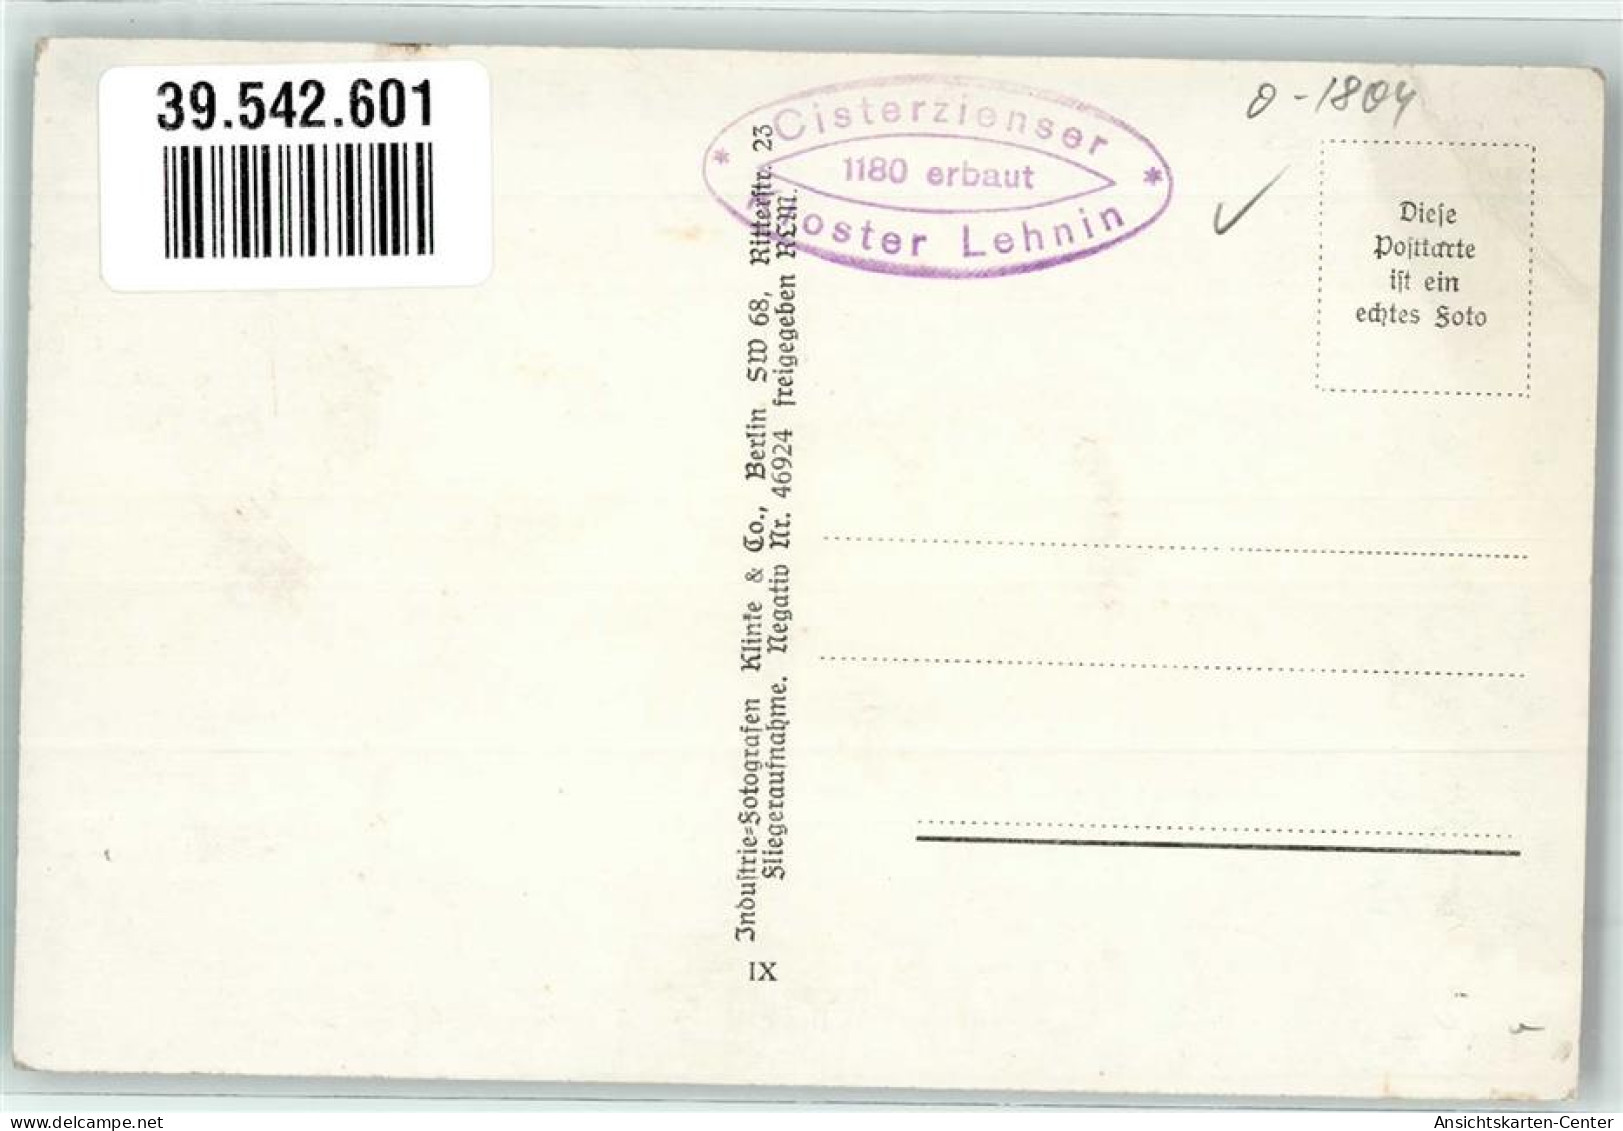 39542601 - Kloster Lehnin - Lehnin